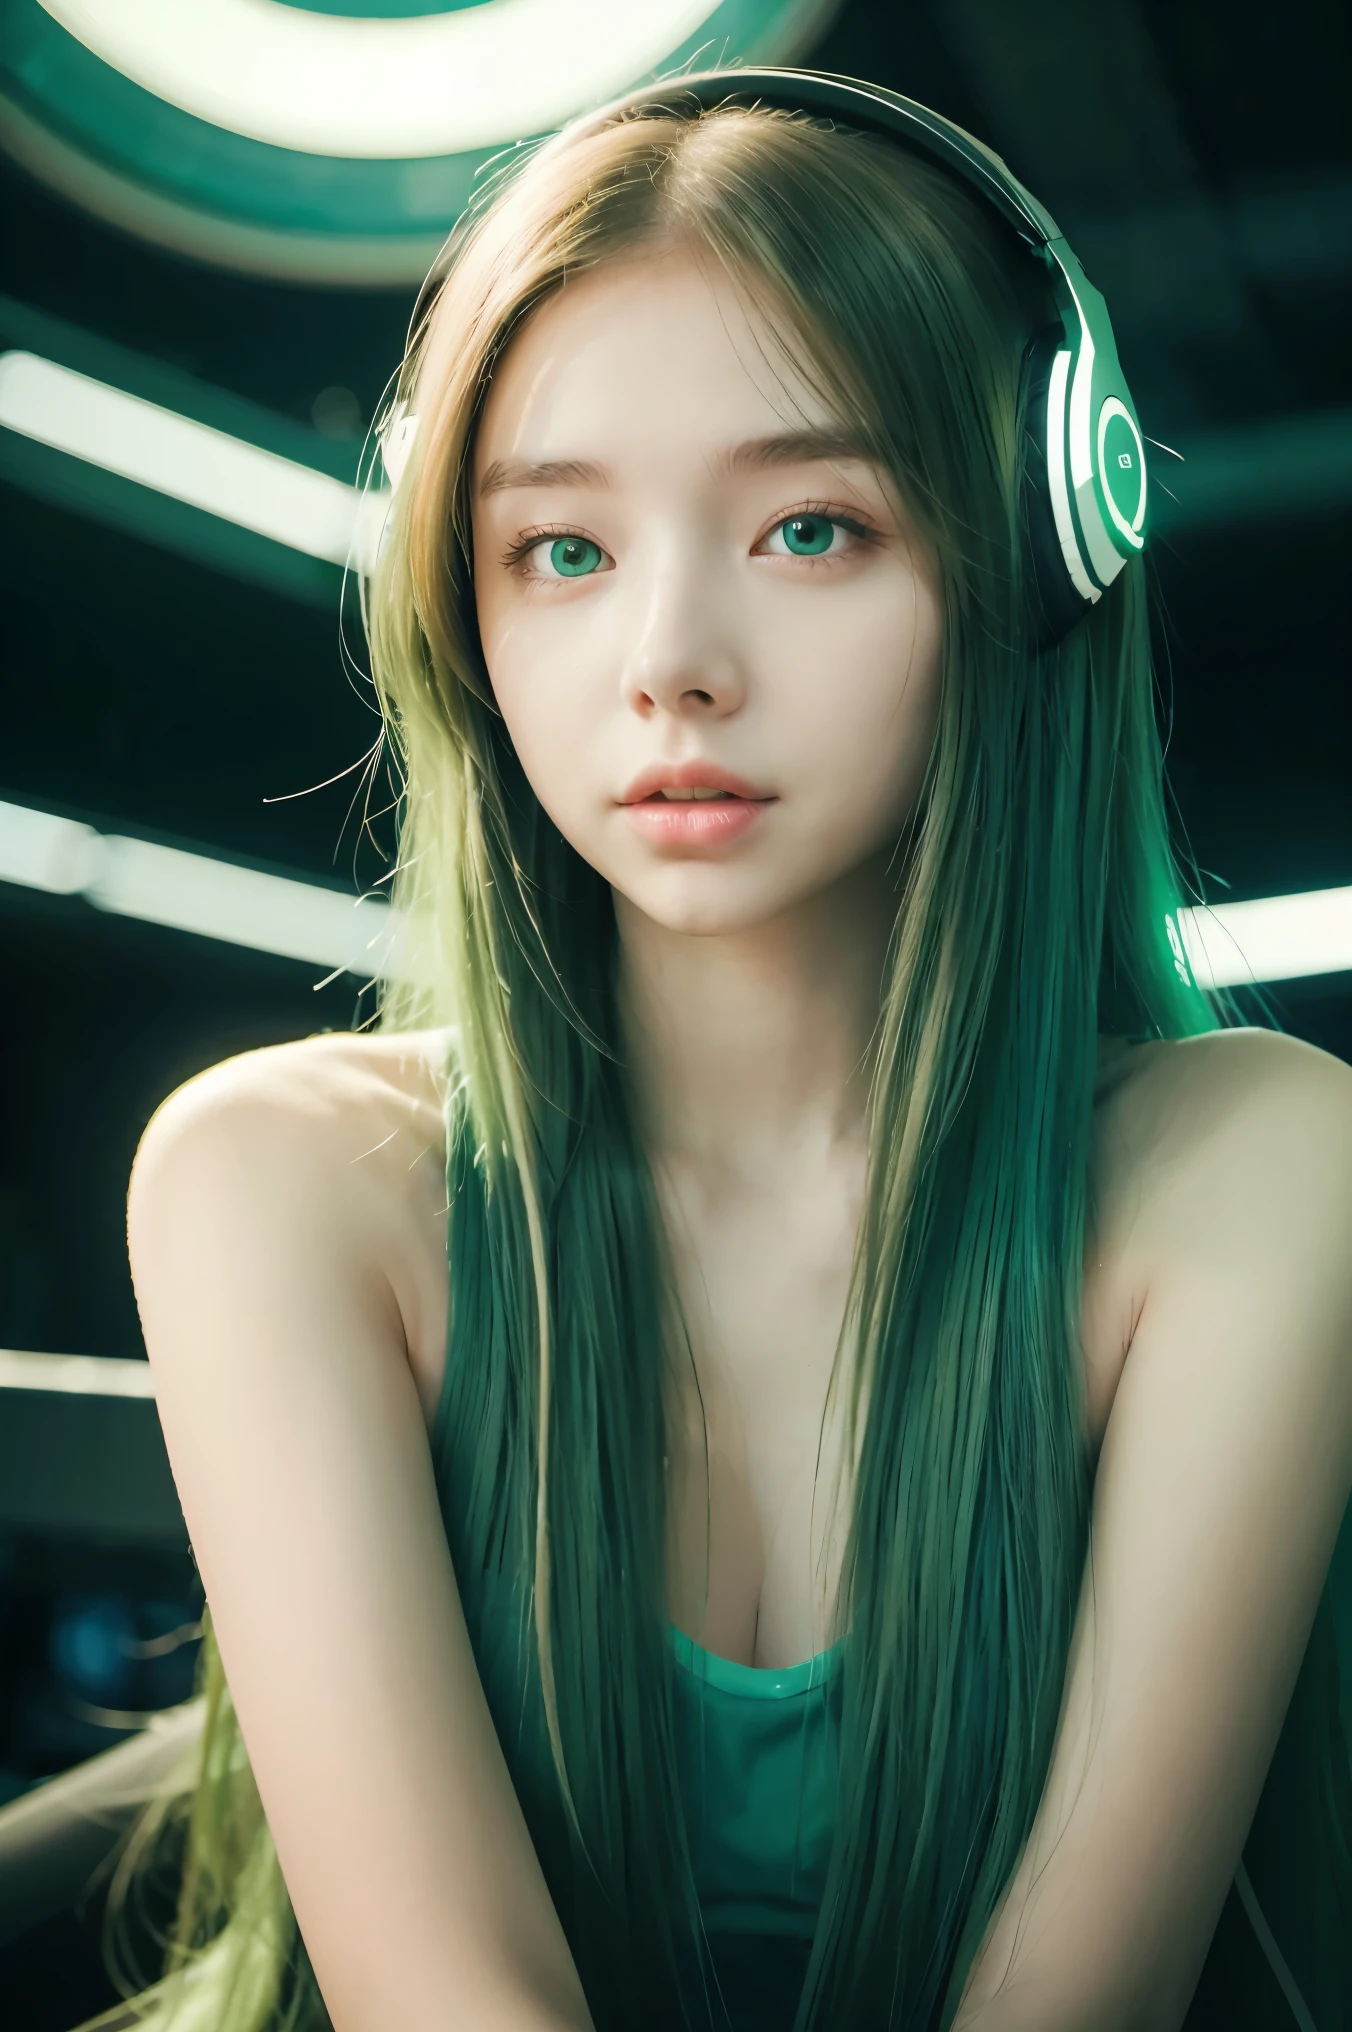 Chica con pelo largo y verde, ojos verdes, vibraciones futuristas, máscara en la boca, Auriculares, 8K, alta calidad, fondo sencillo, ojos brillantes, bonita pose